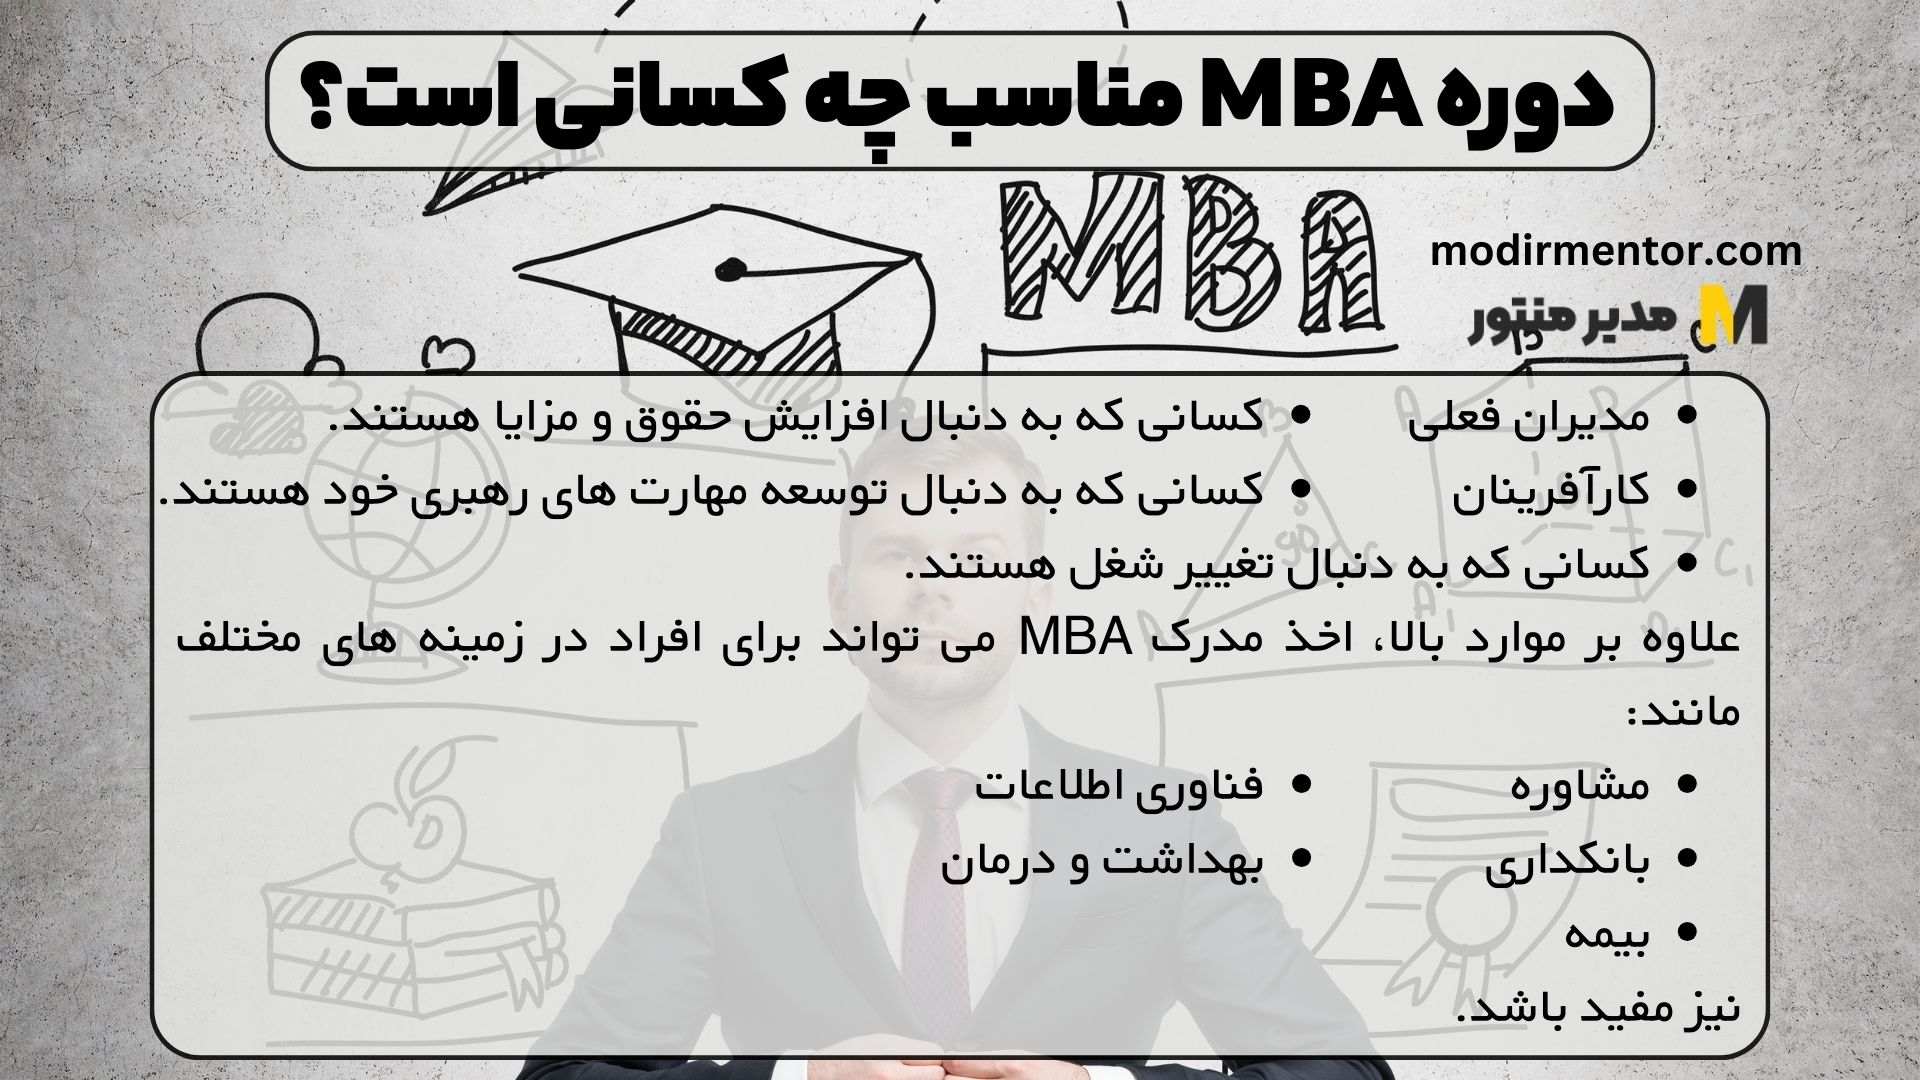 دوره MBA مناسب چه کسانی است؟